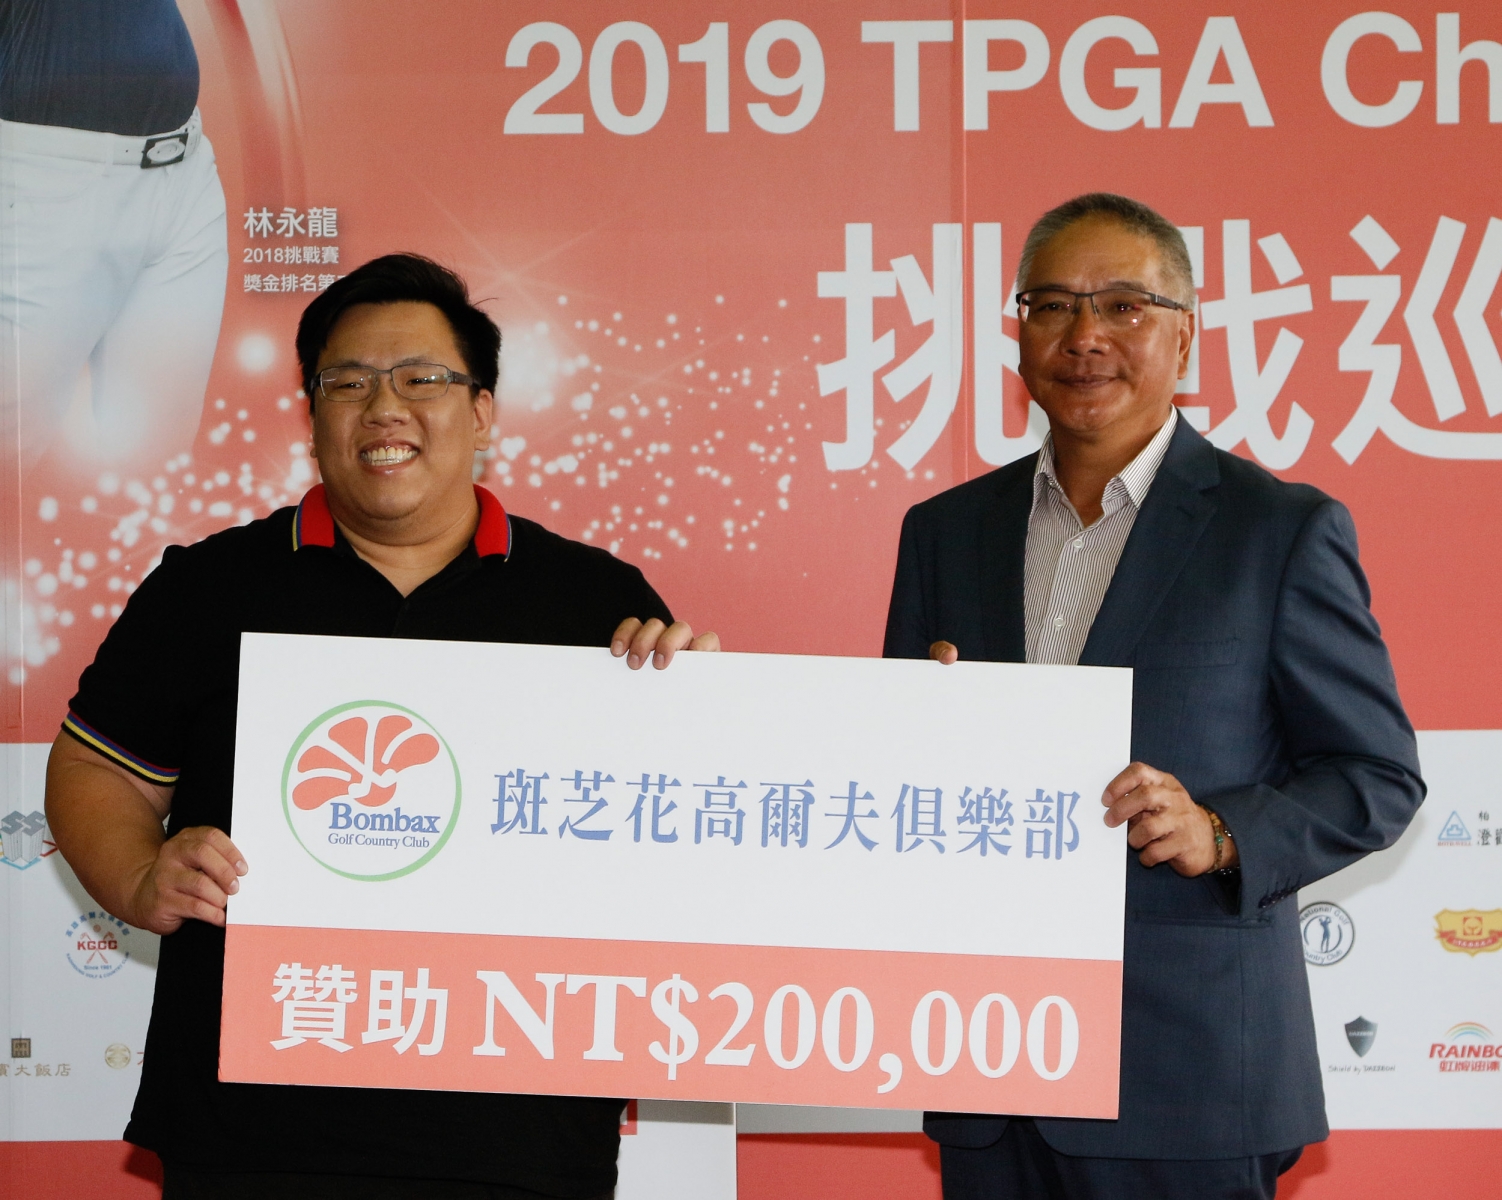 斑芝花高爾夫俱樂部總經理鄭博元(左)特別贊助20萬元與TPGA共同推動今年台巡賽事由TPGA理事長謝錦昇代表接受_(葉勇宏攝)